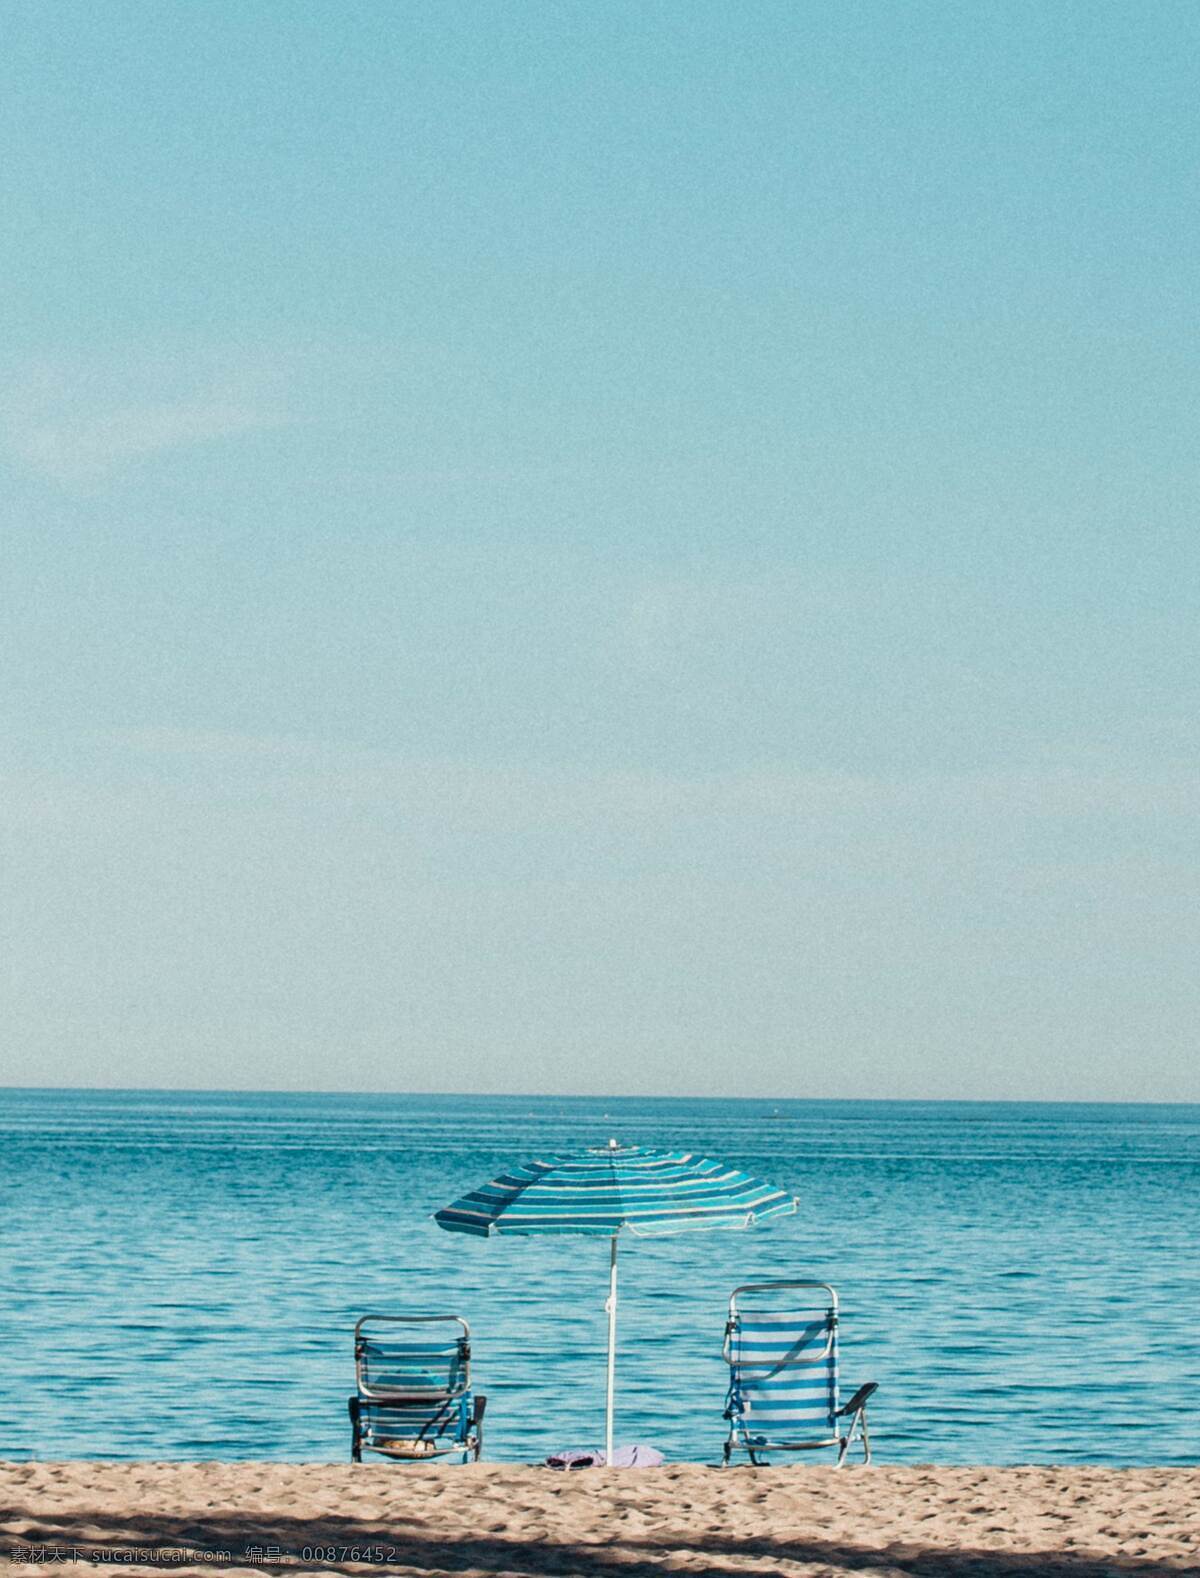 海洋 水 大海 天空 蓝色 遮阳伞 椅子 海边 地平线 海滩 背景 桌面壁纸 自然景观 自然风景